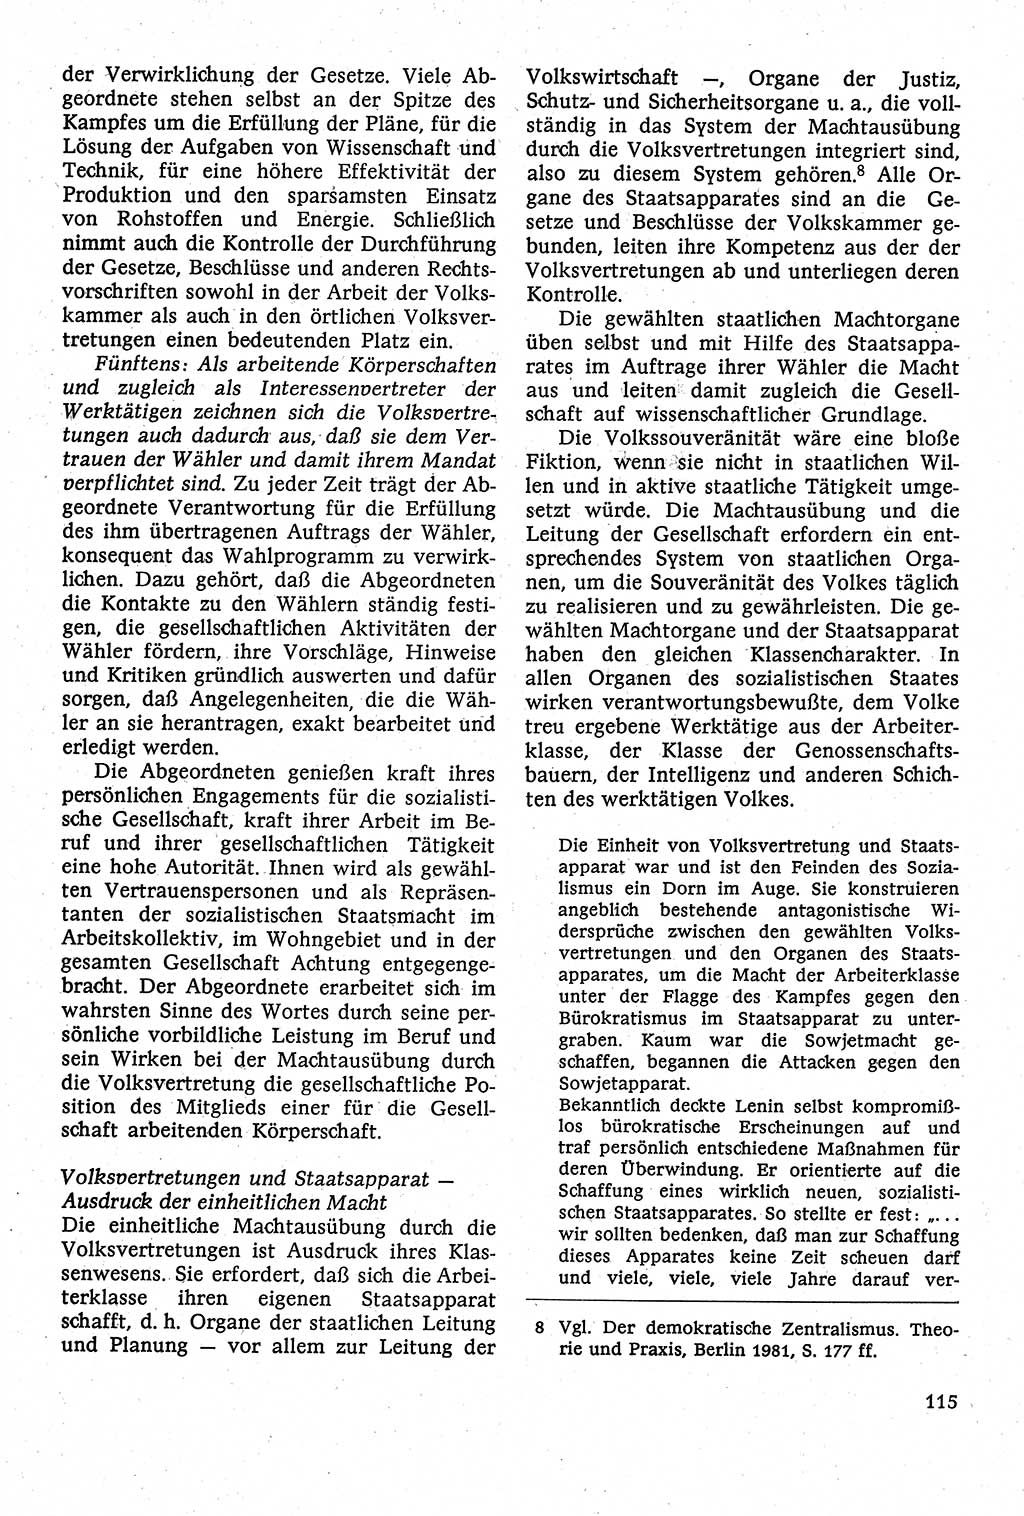 Staatsrecht der DDR [Deutsche Demokratische Republik (DDR)], Lehrbuch 1984, Seite 115 (St.-R. DDR Lb. 1984, S. 115)